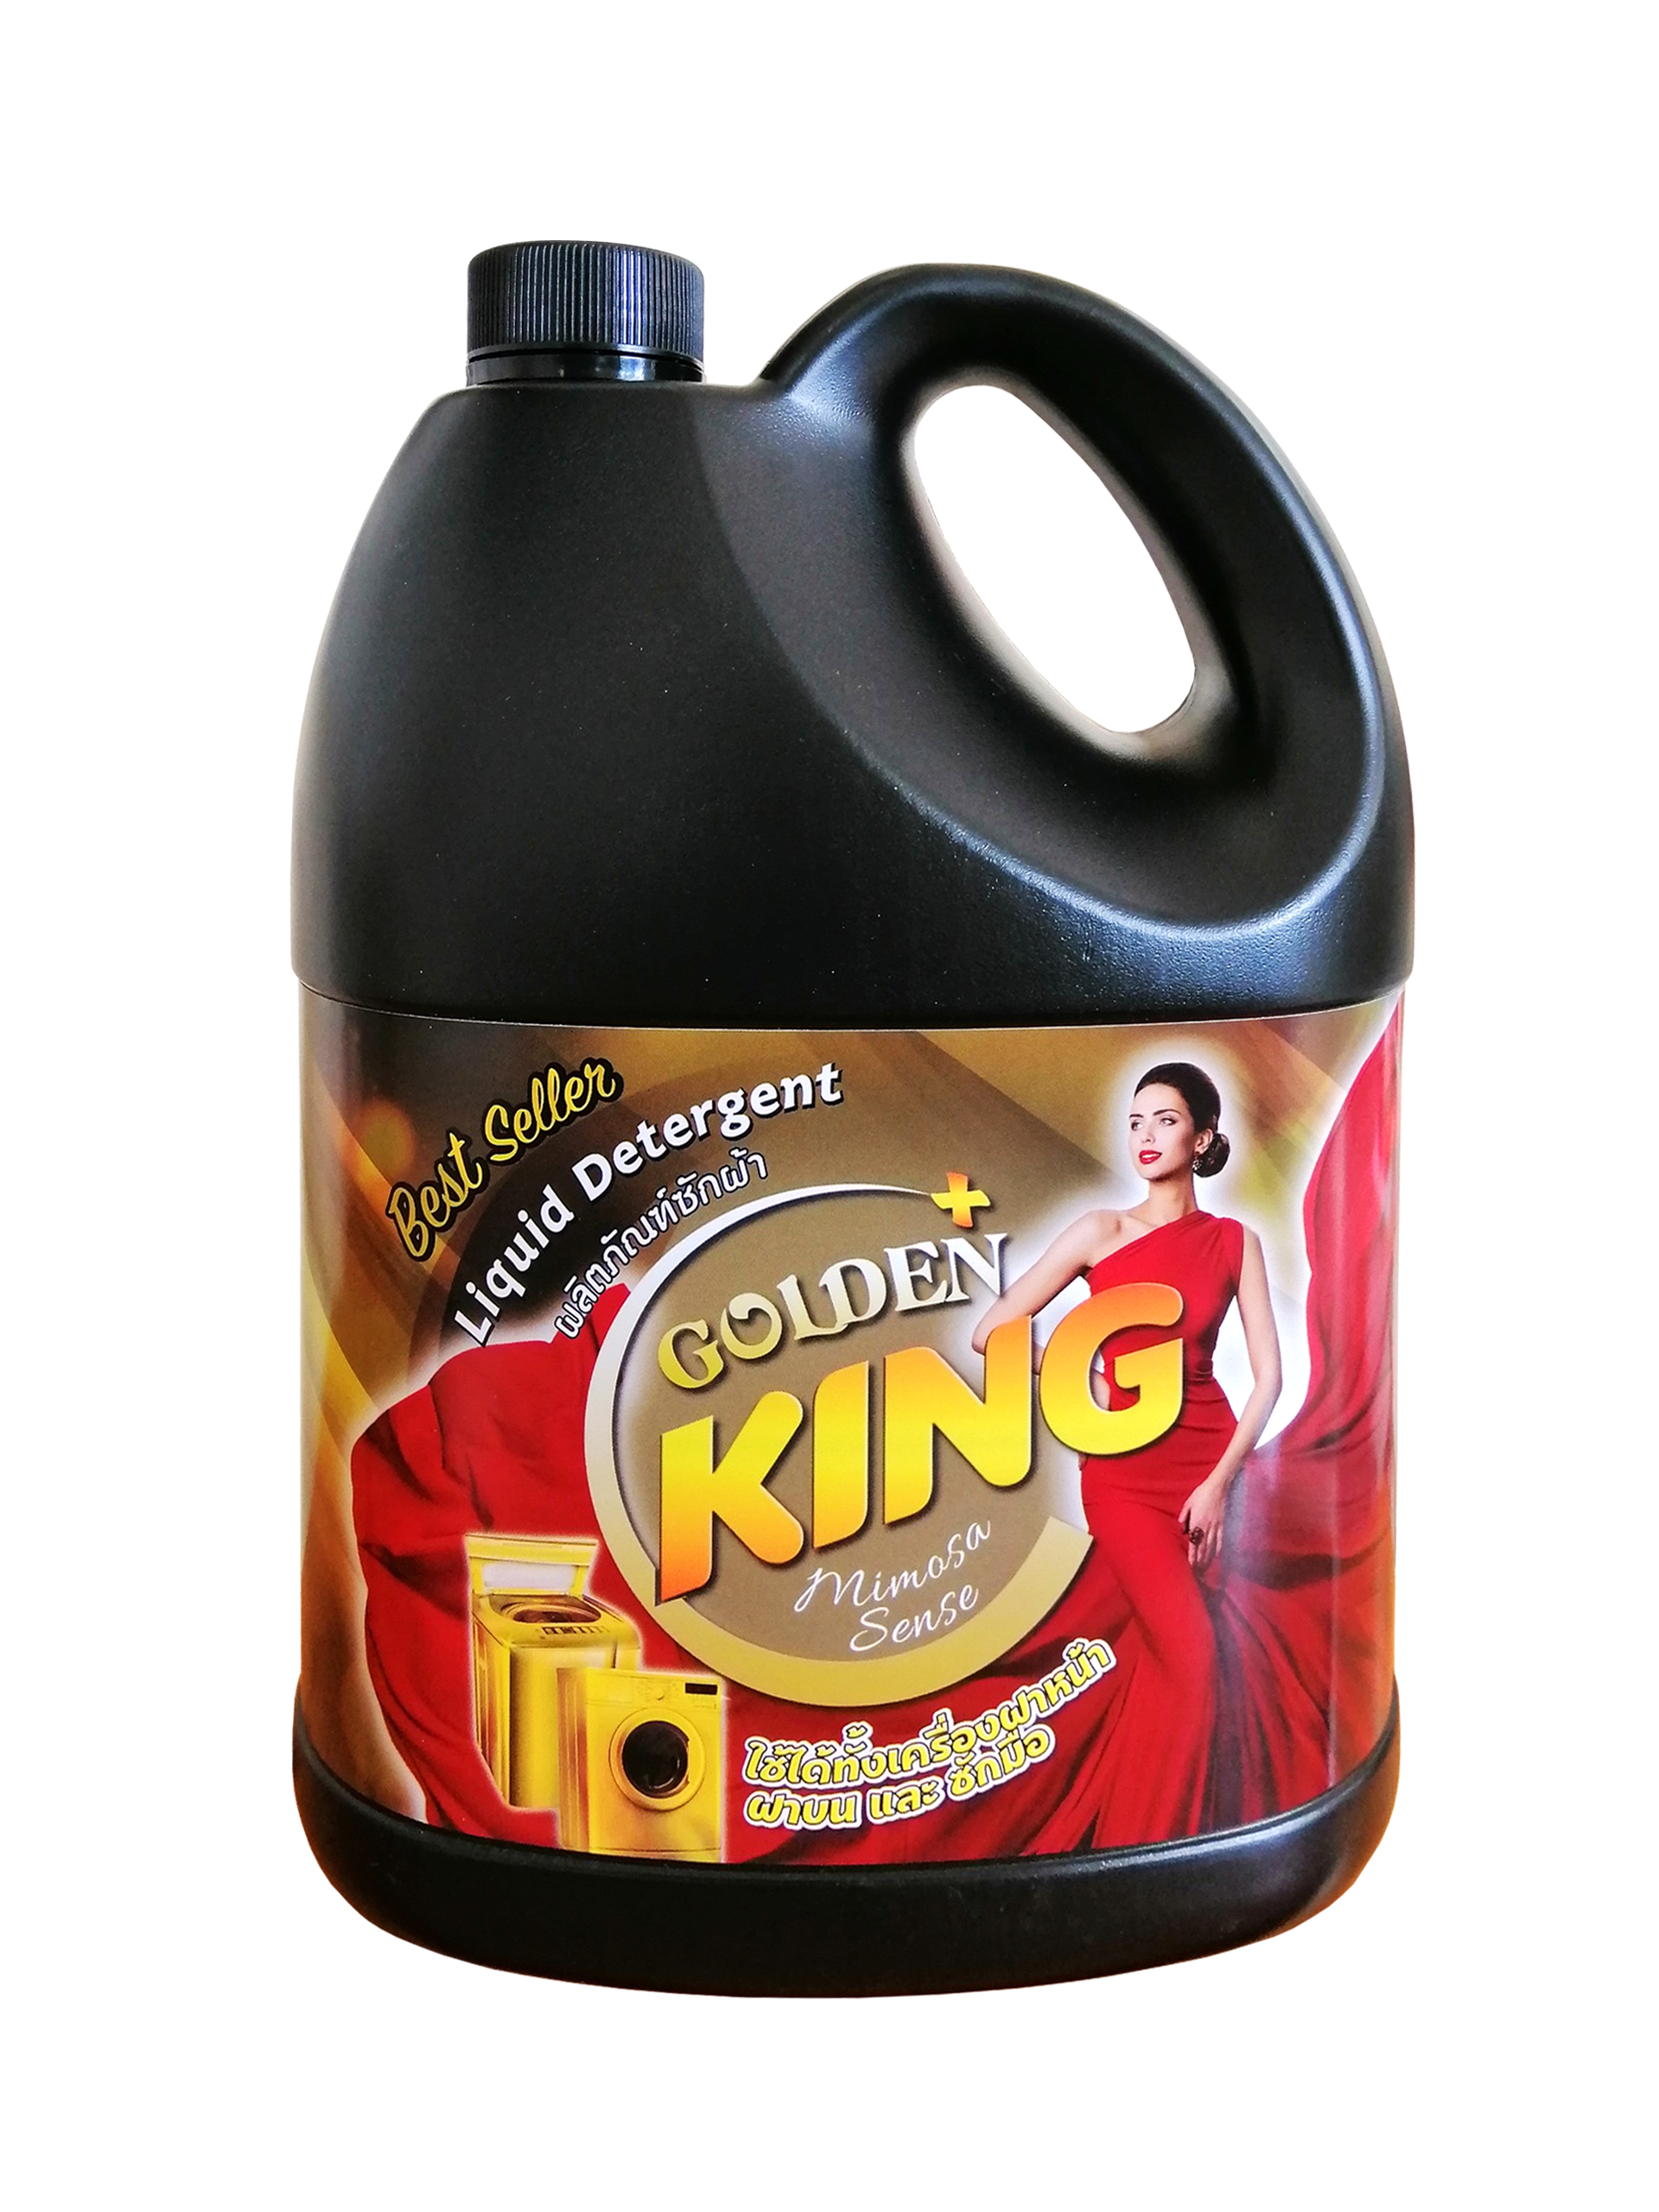 Nước giặt xả GOLDEN king 6 in1 công nghệ nhật bản 3.5L (màu vàng) 3